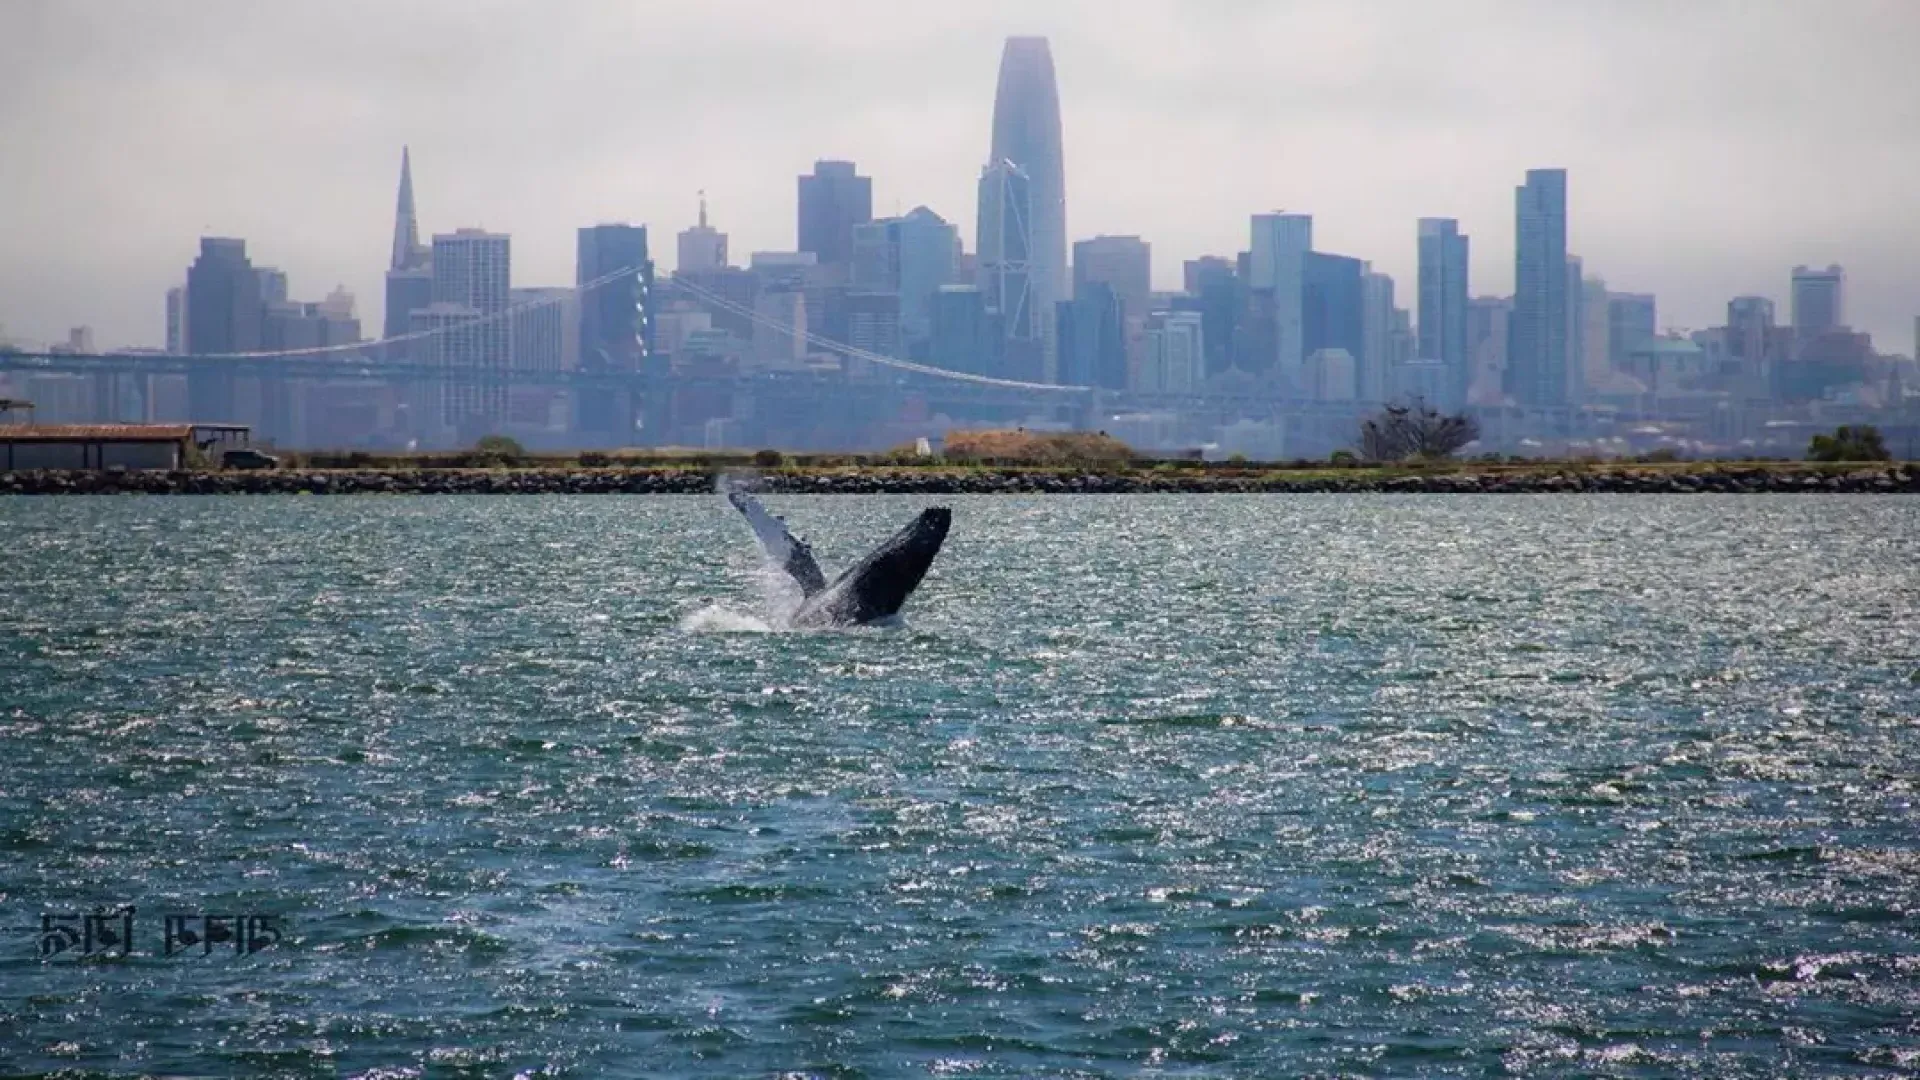 一条鲸鱼钻进了贝博体彩app湾的水域.